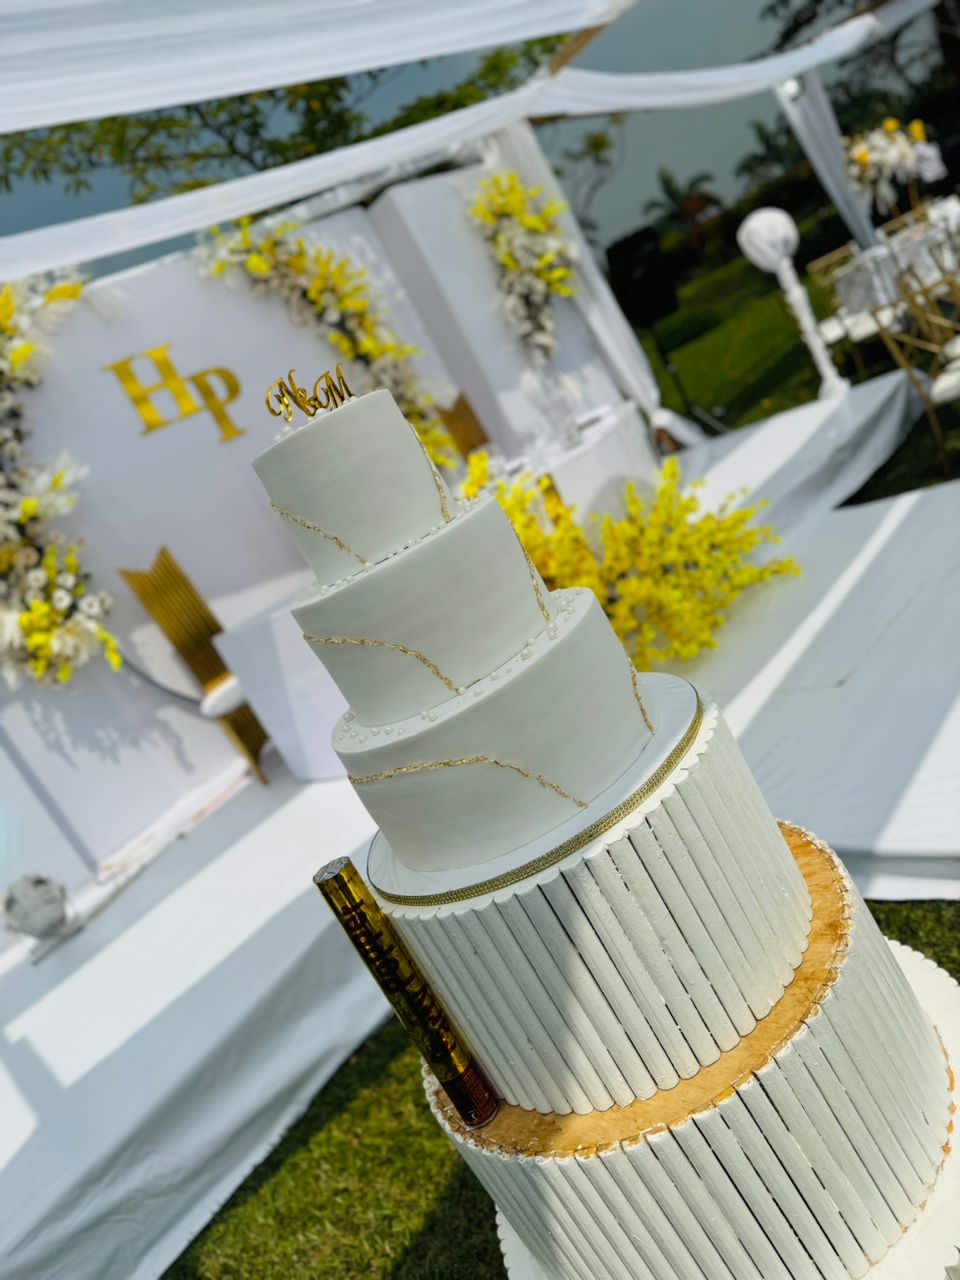 N & M WEDDING CAKE 